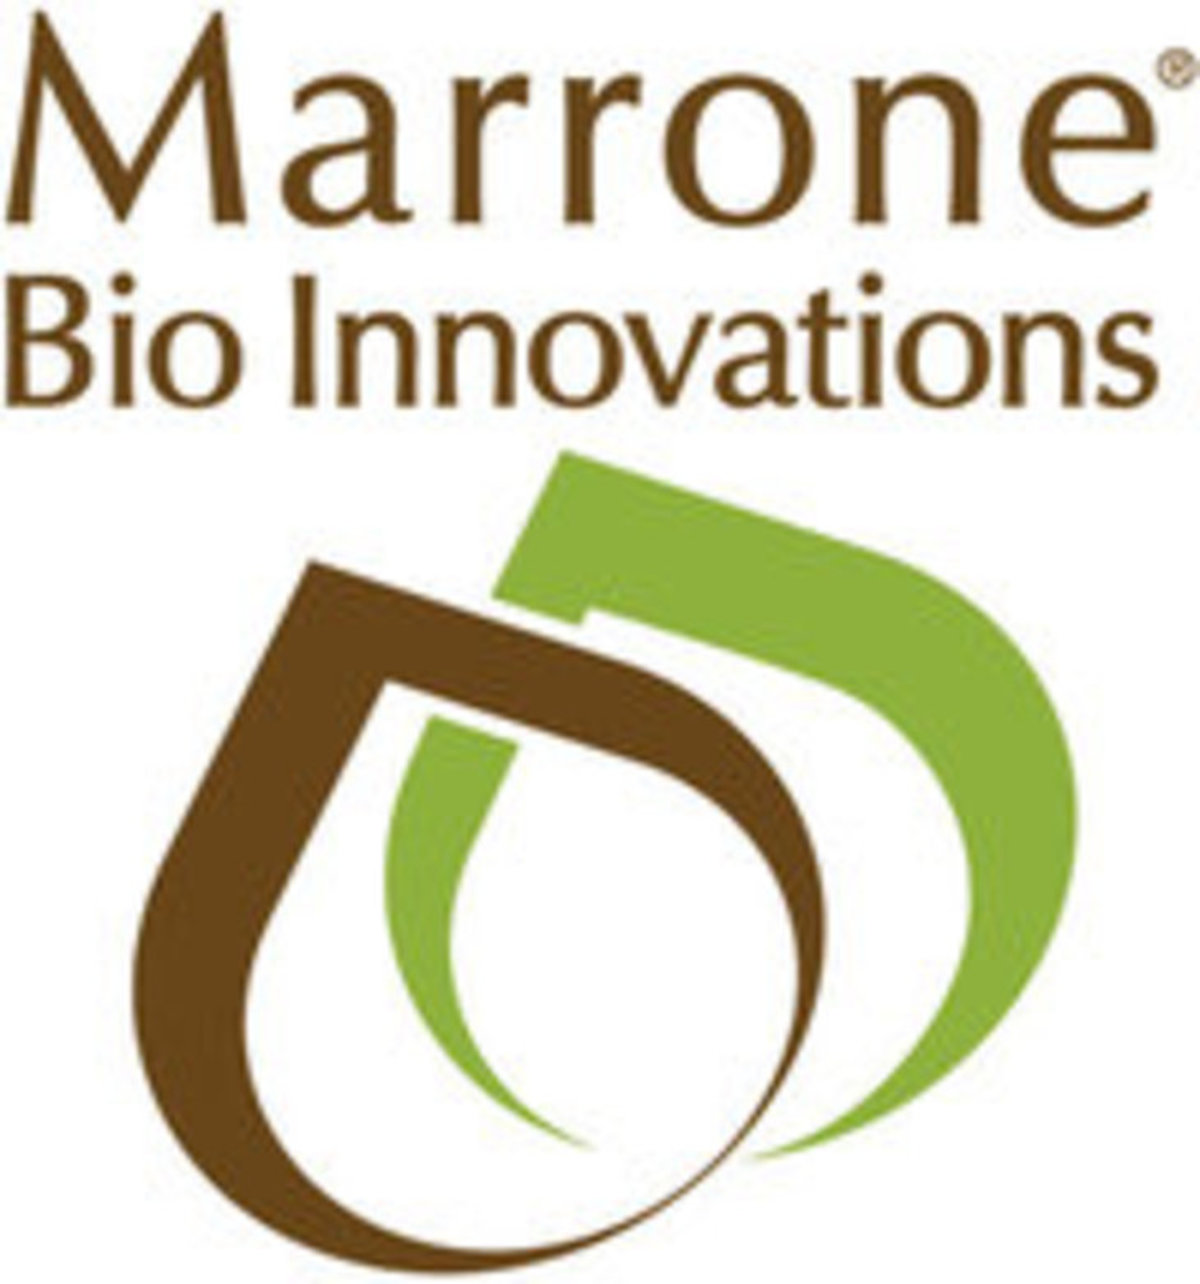 Maarone Bio Innovations